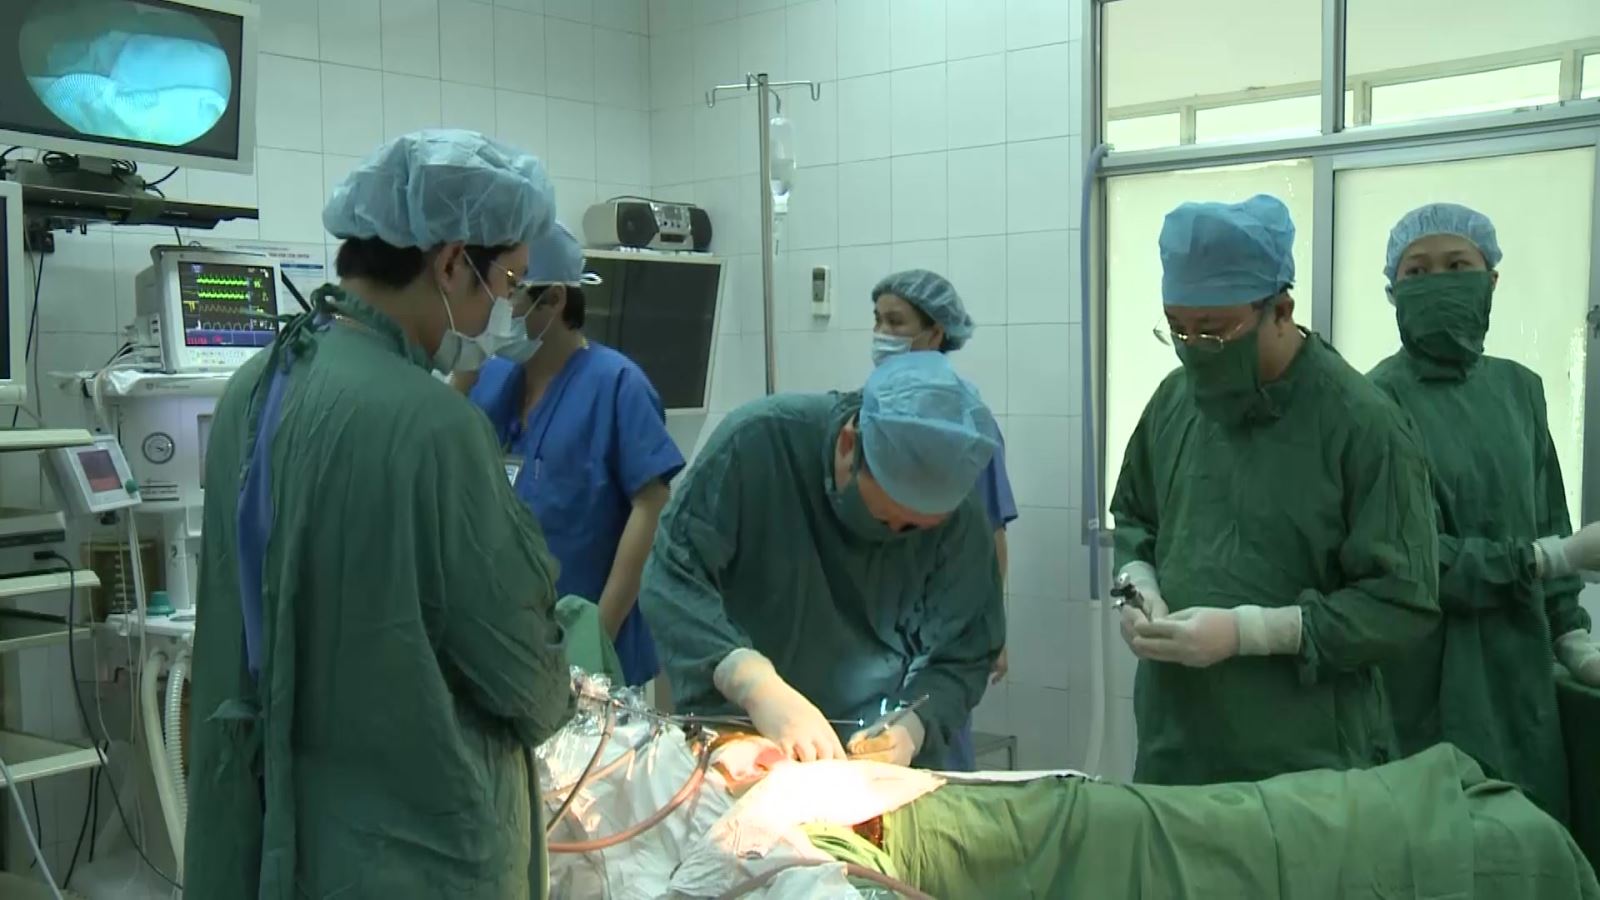 Bệnh viện Phụ sản Trung ương tổ chức họp báo công bố thông tắc kẽ tử cung thành công bằng phương pháp mới